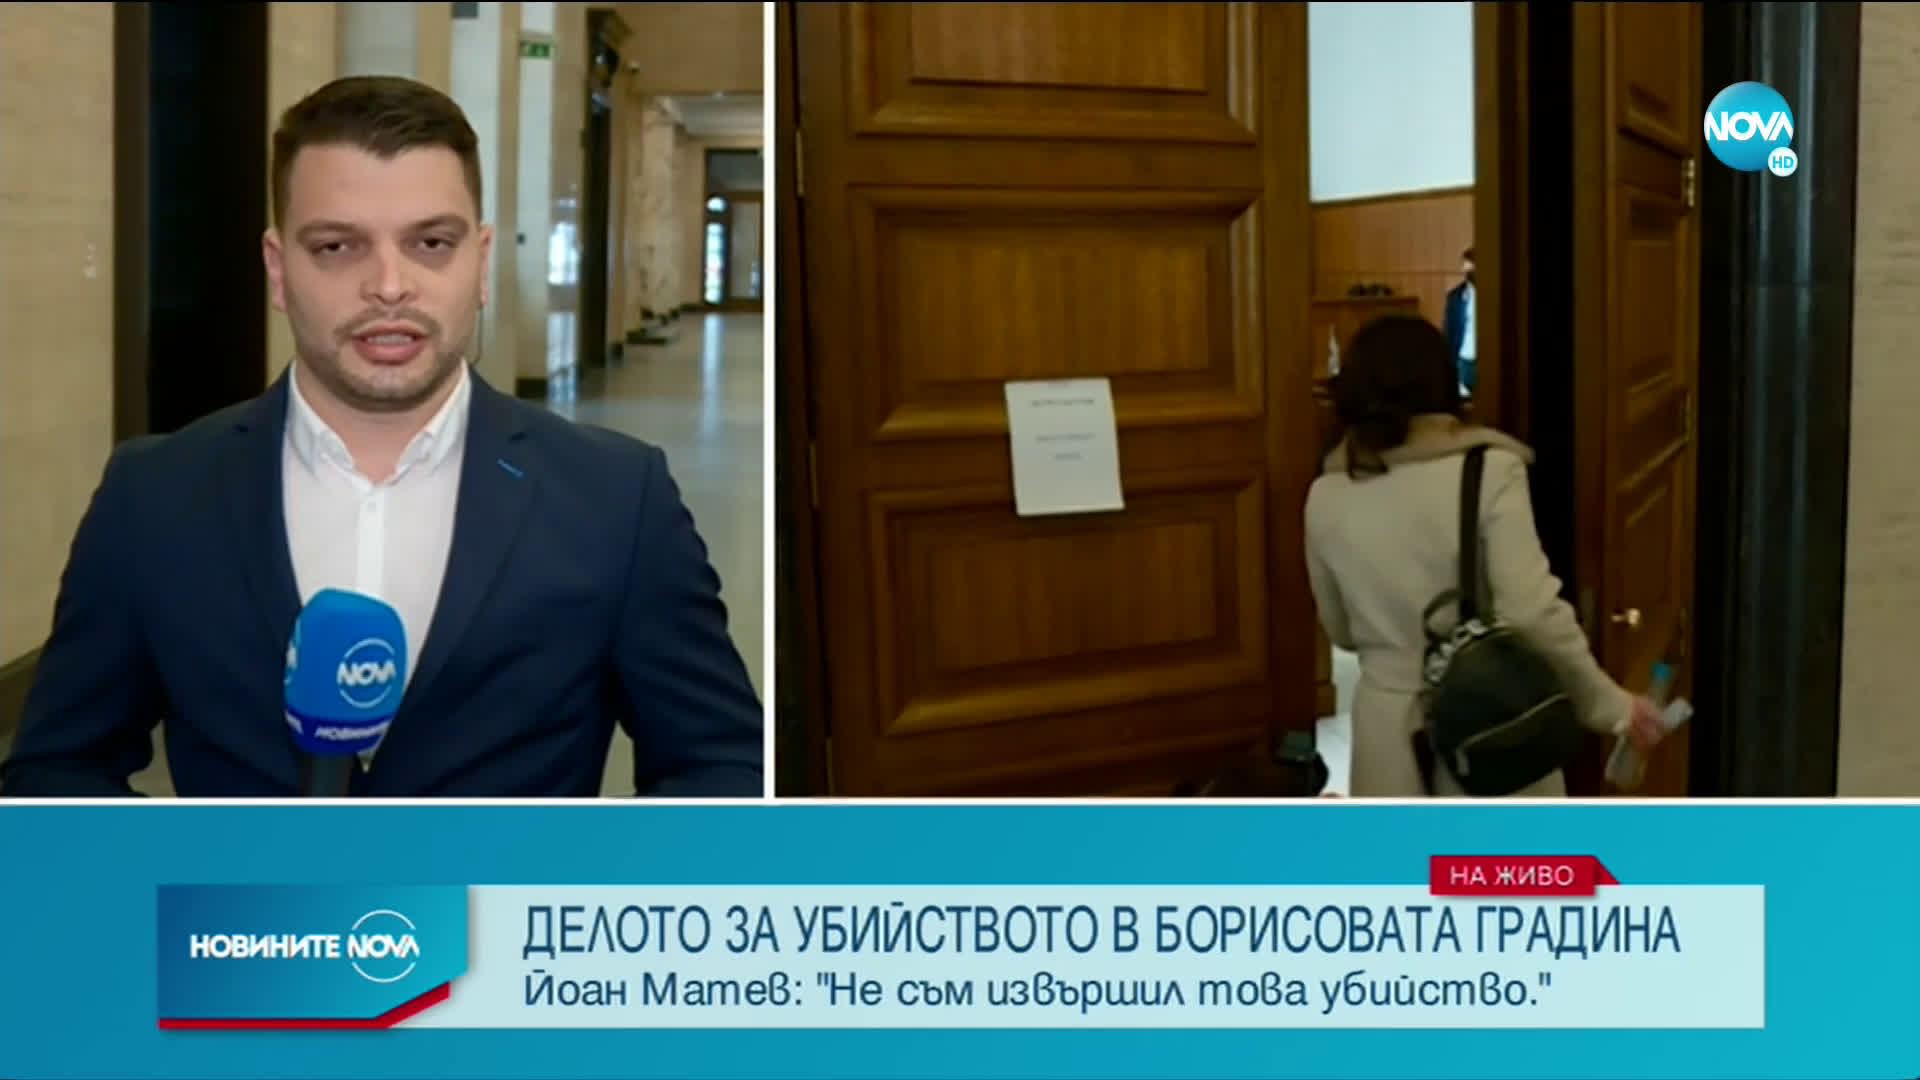 Йоан Матев: Разбрах за убийството от медиите, не съм го извършил